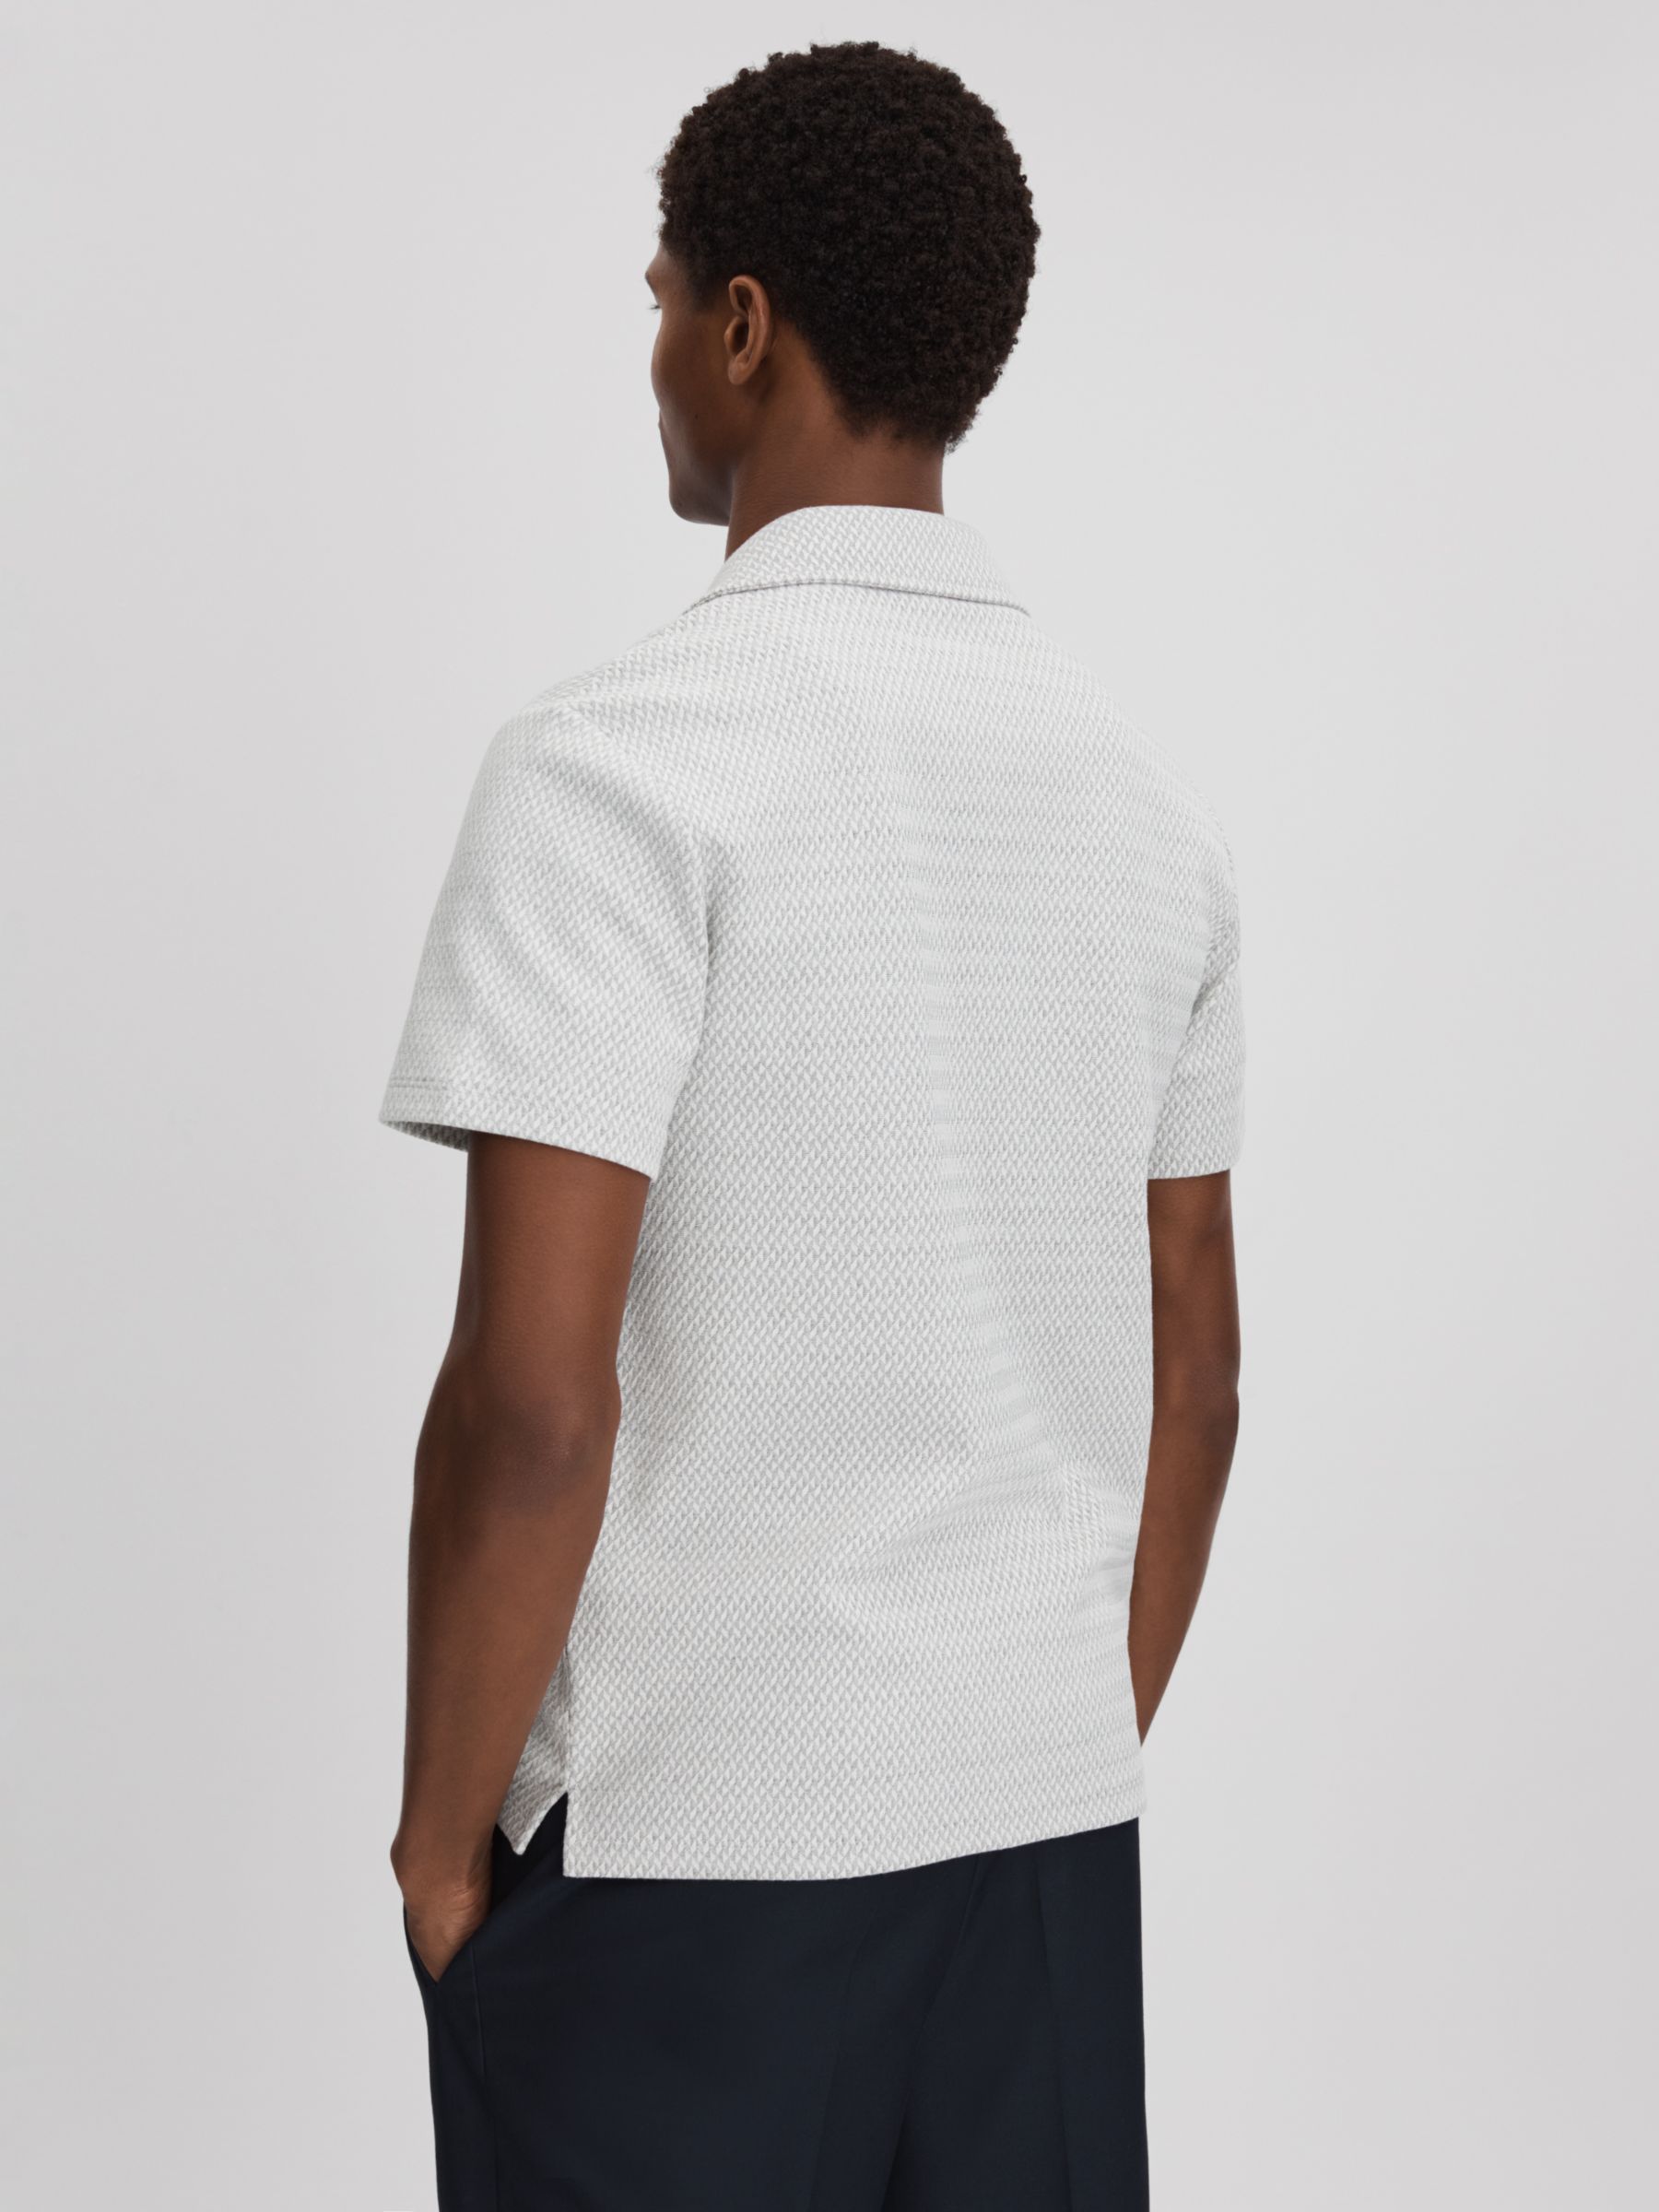 Buy Reiss Brewer Short Sleeve Textured Jacquard Shirt, Light Grey Online at johnlewis.com